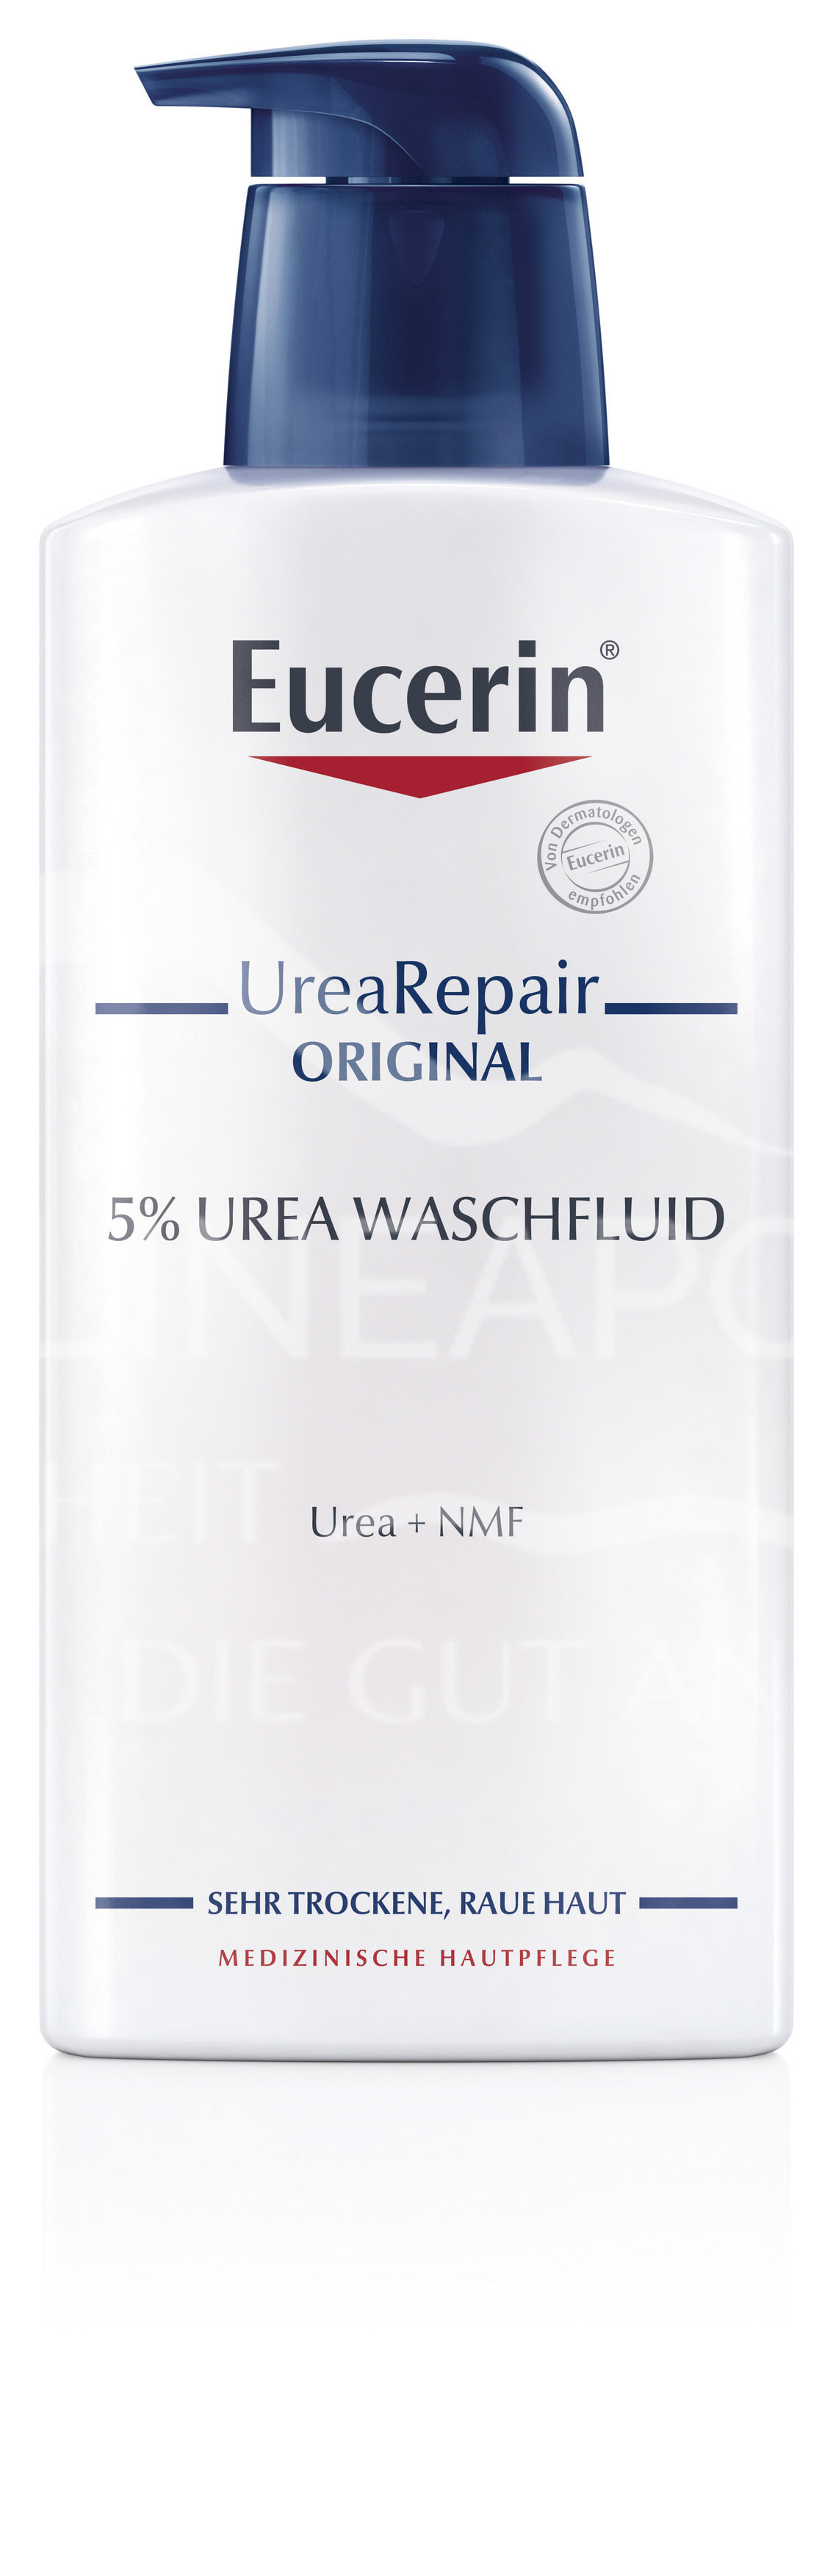 Eucerin® UreaRepair ORIGINAL Waschfluid 5% Urea